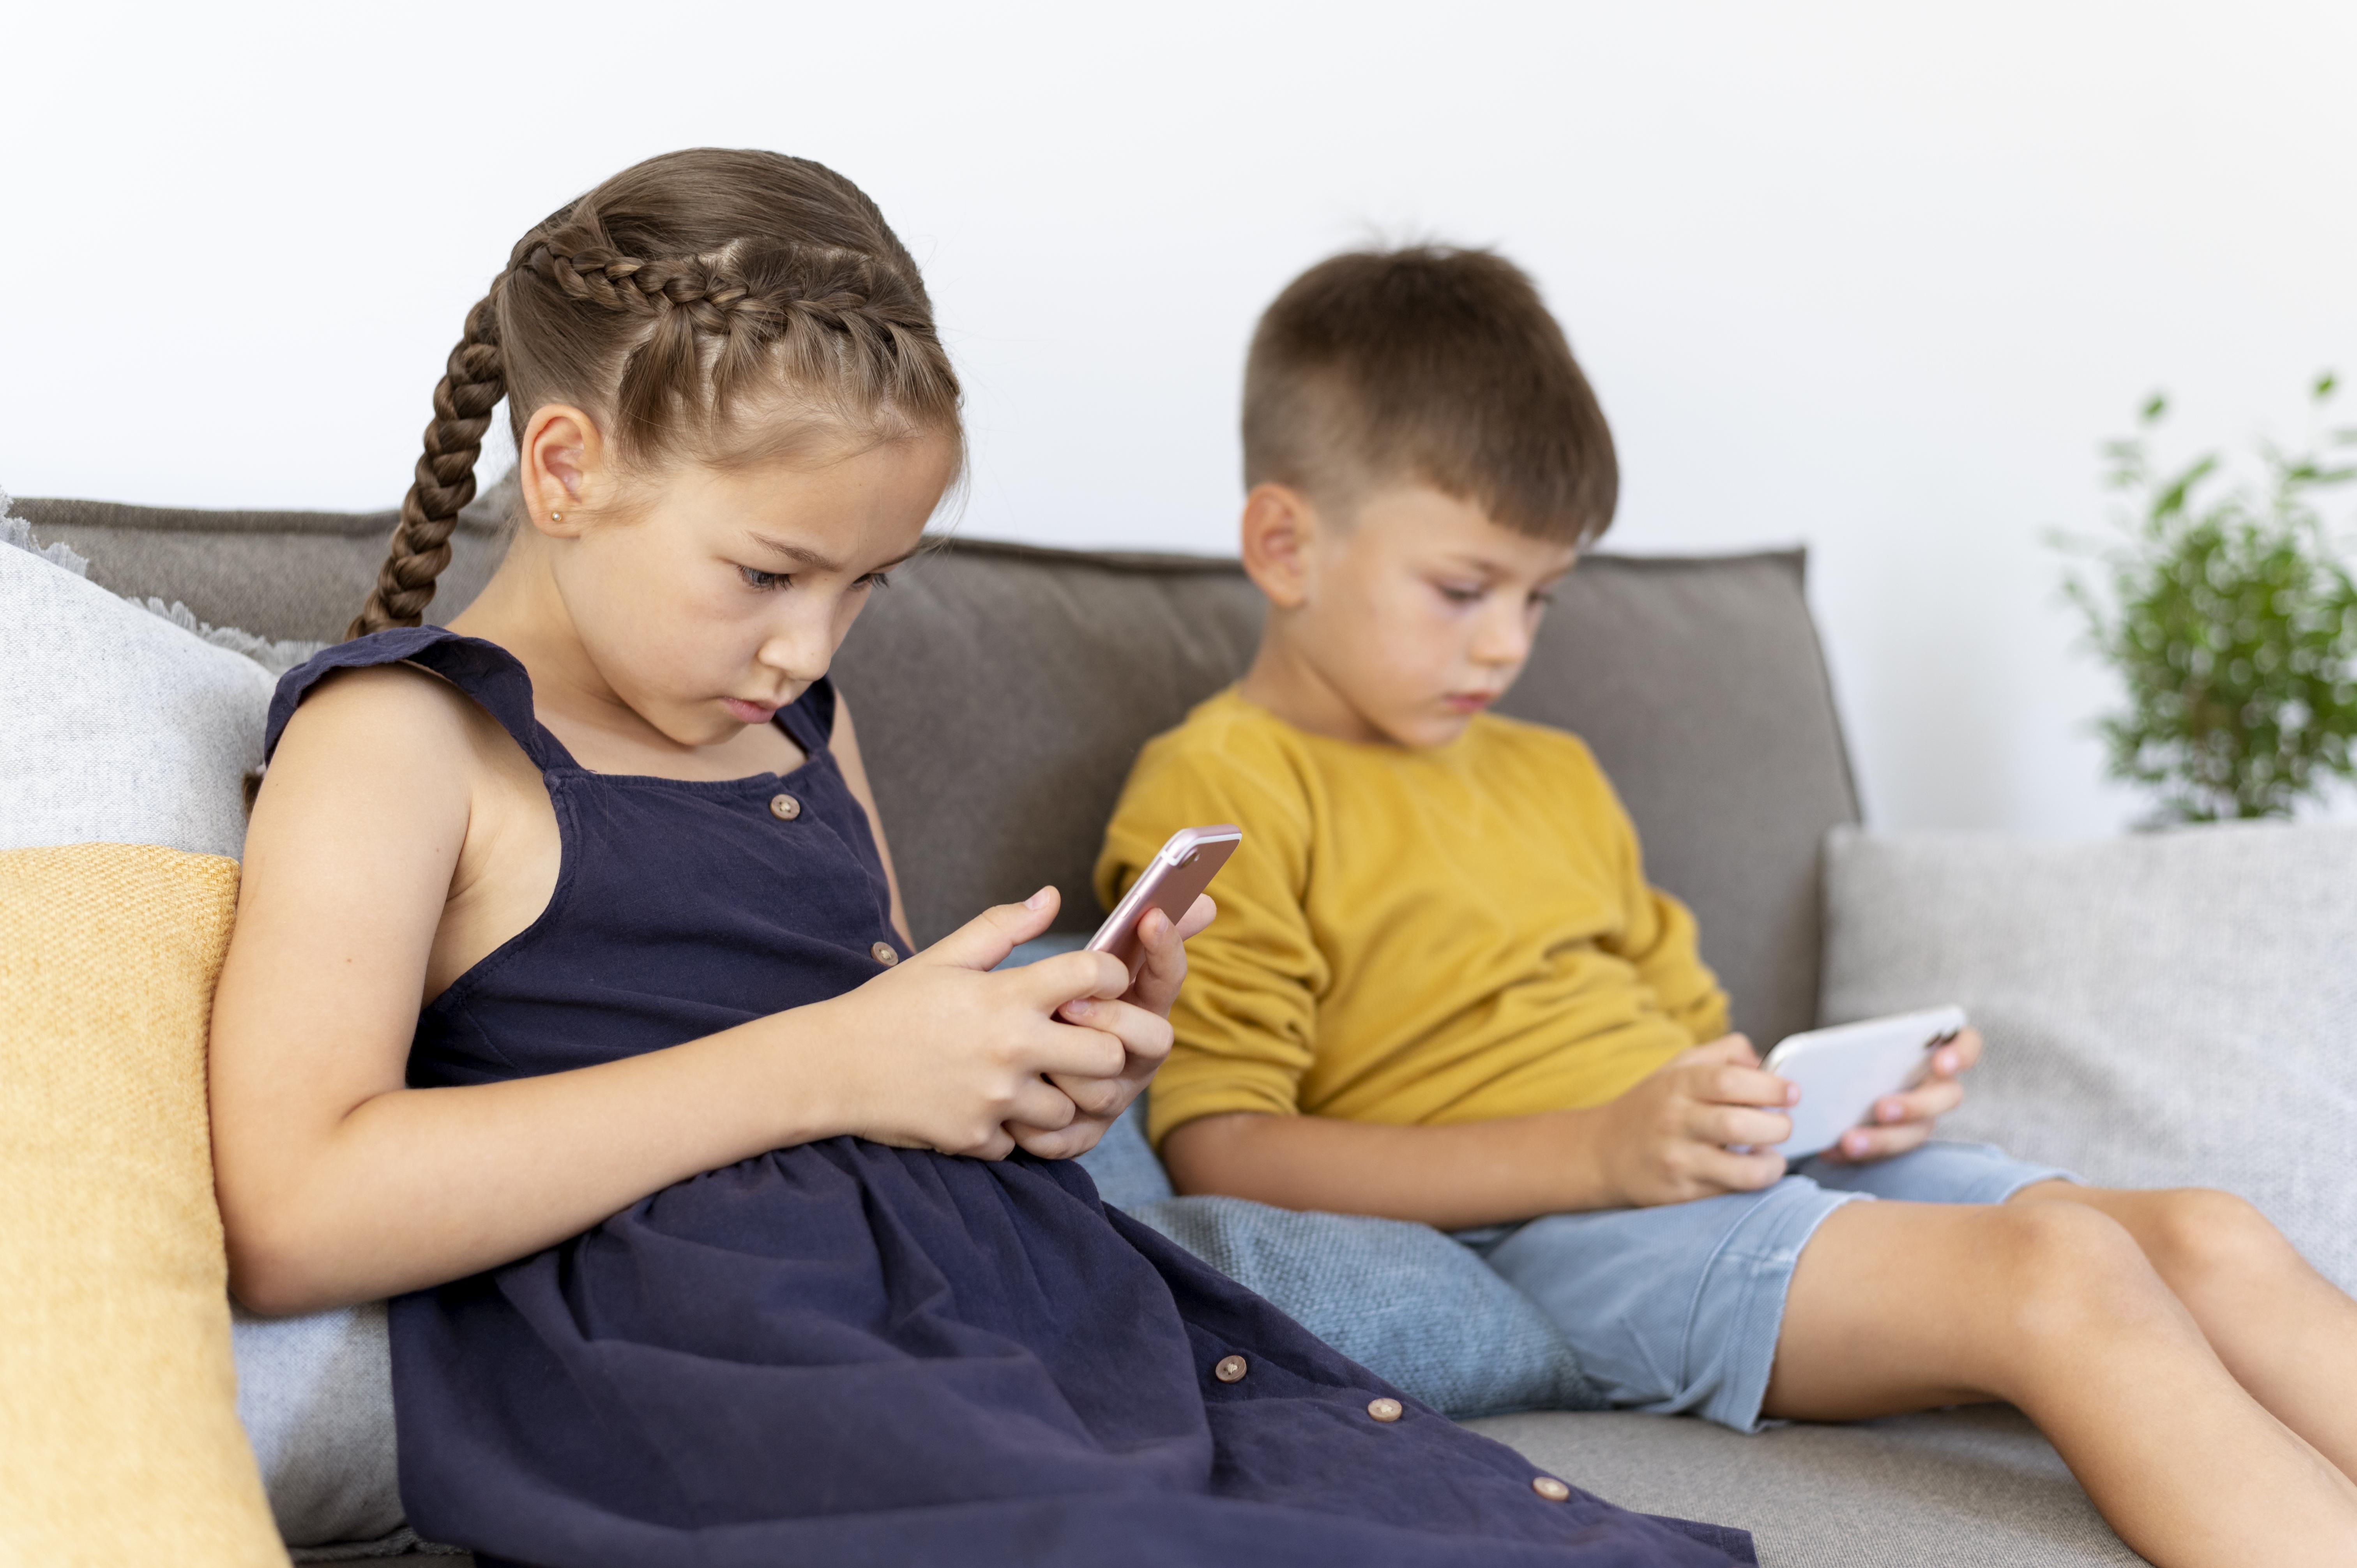 Subir fotos de los niños a redes se le conoce como sharenting y es una actividad que puede poner en riesgo su seguridad, privacidad e identidad. (Freepik)